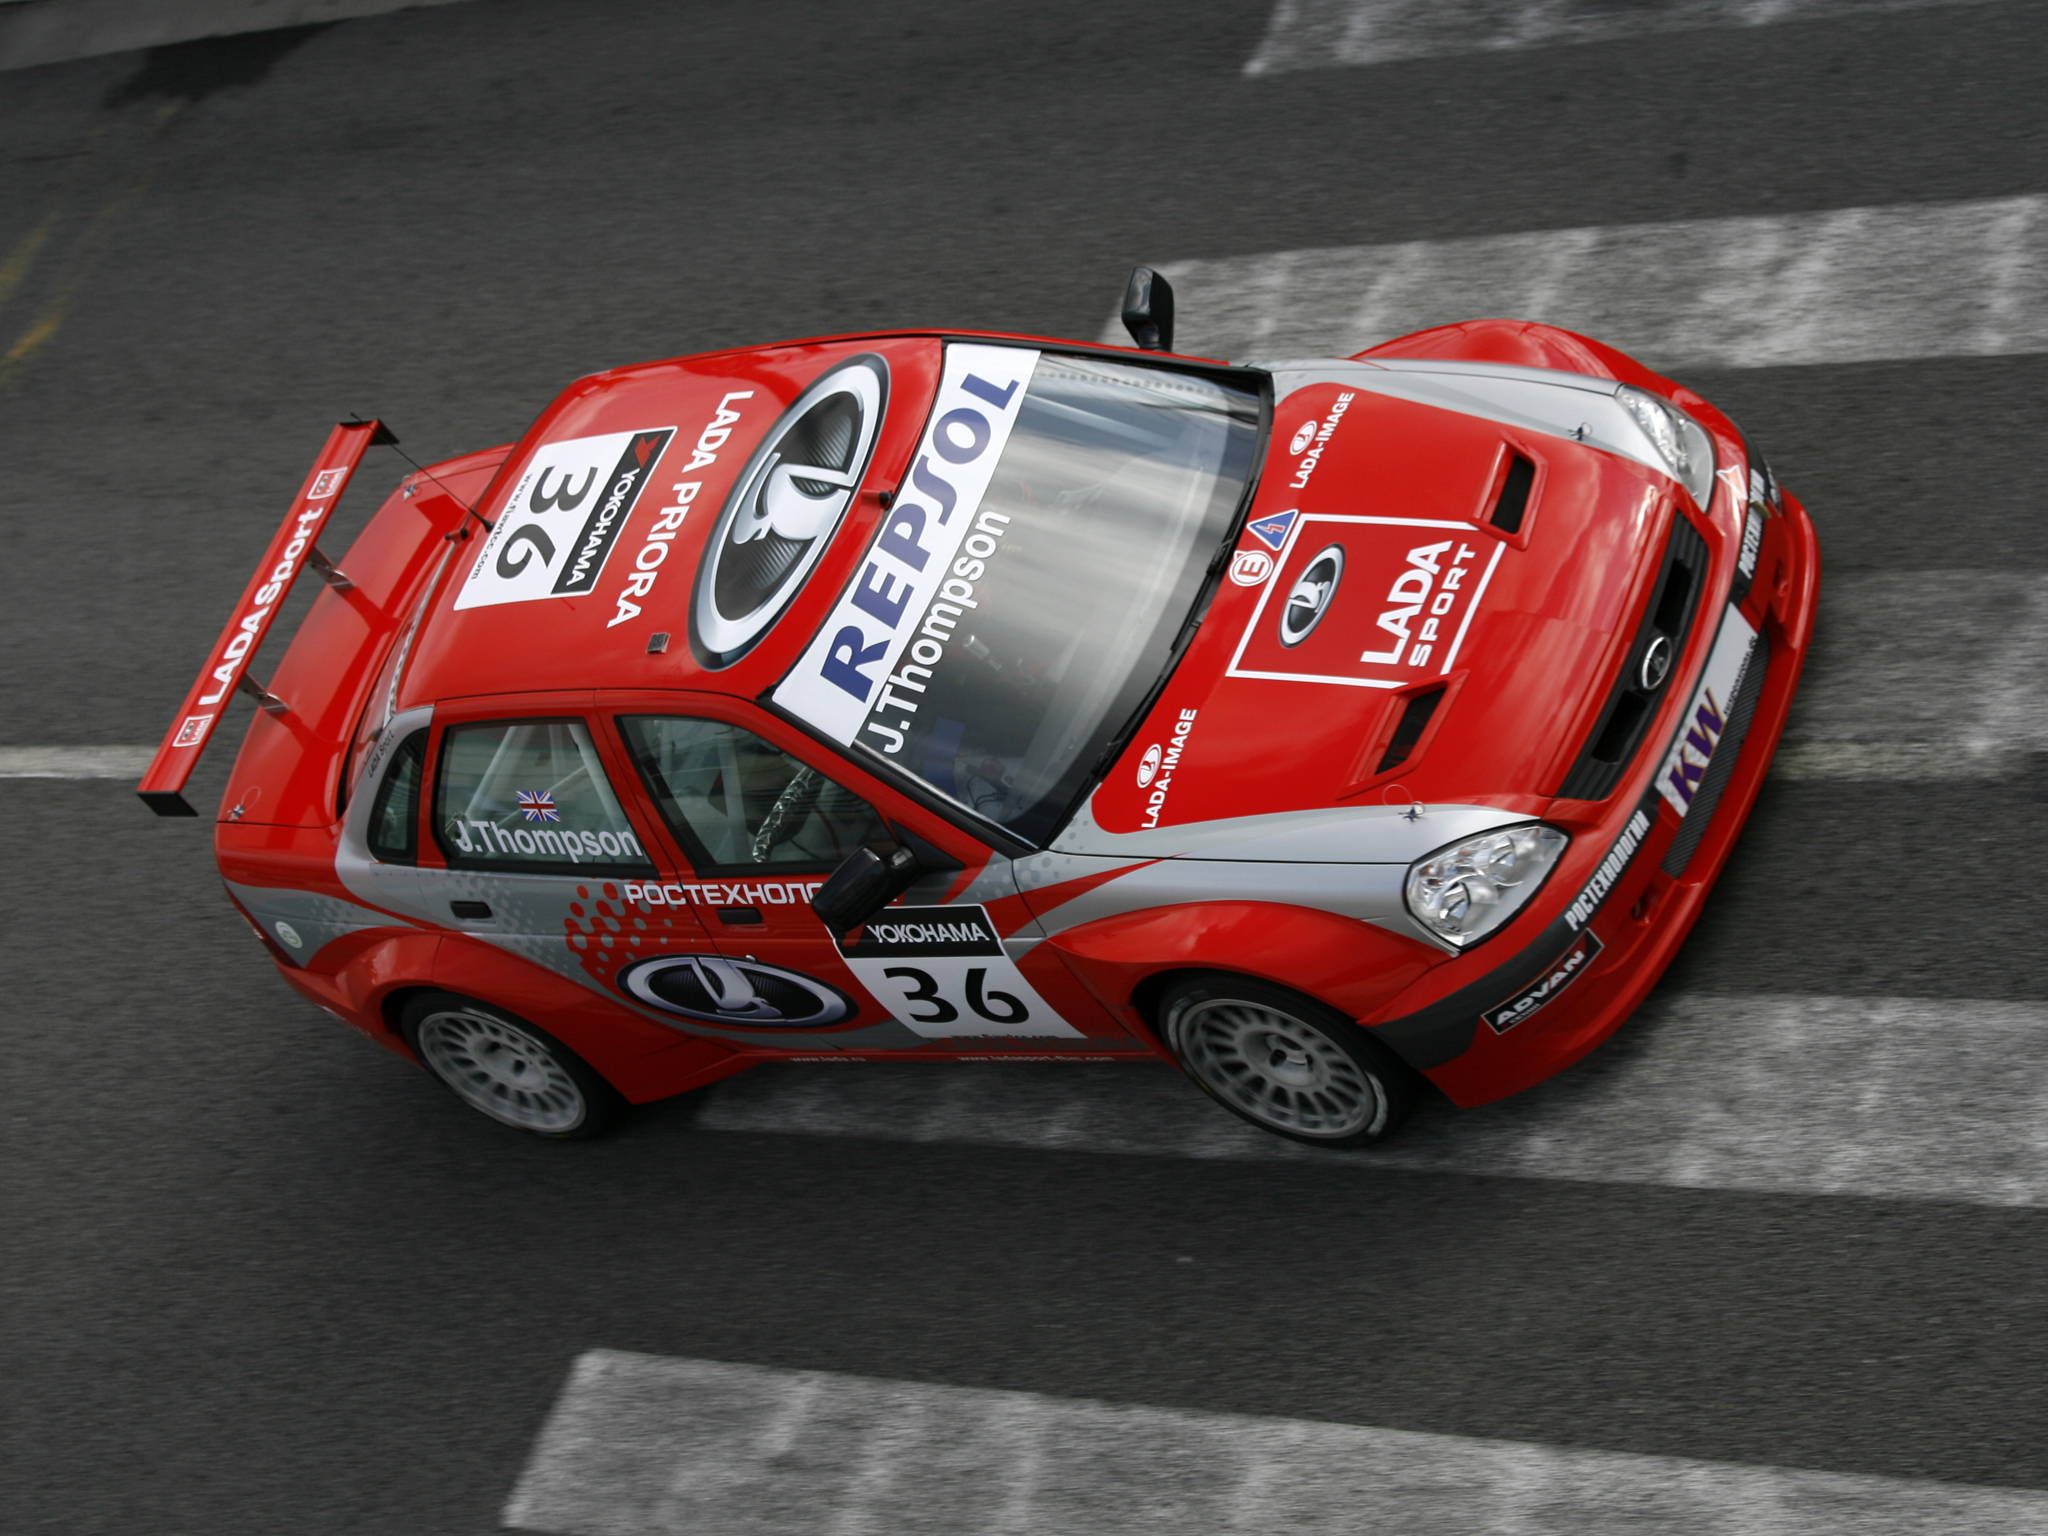 Free download wallpaper Racing, Vehicles, Wtcc Racing on your PC desktop